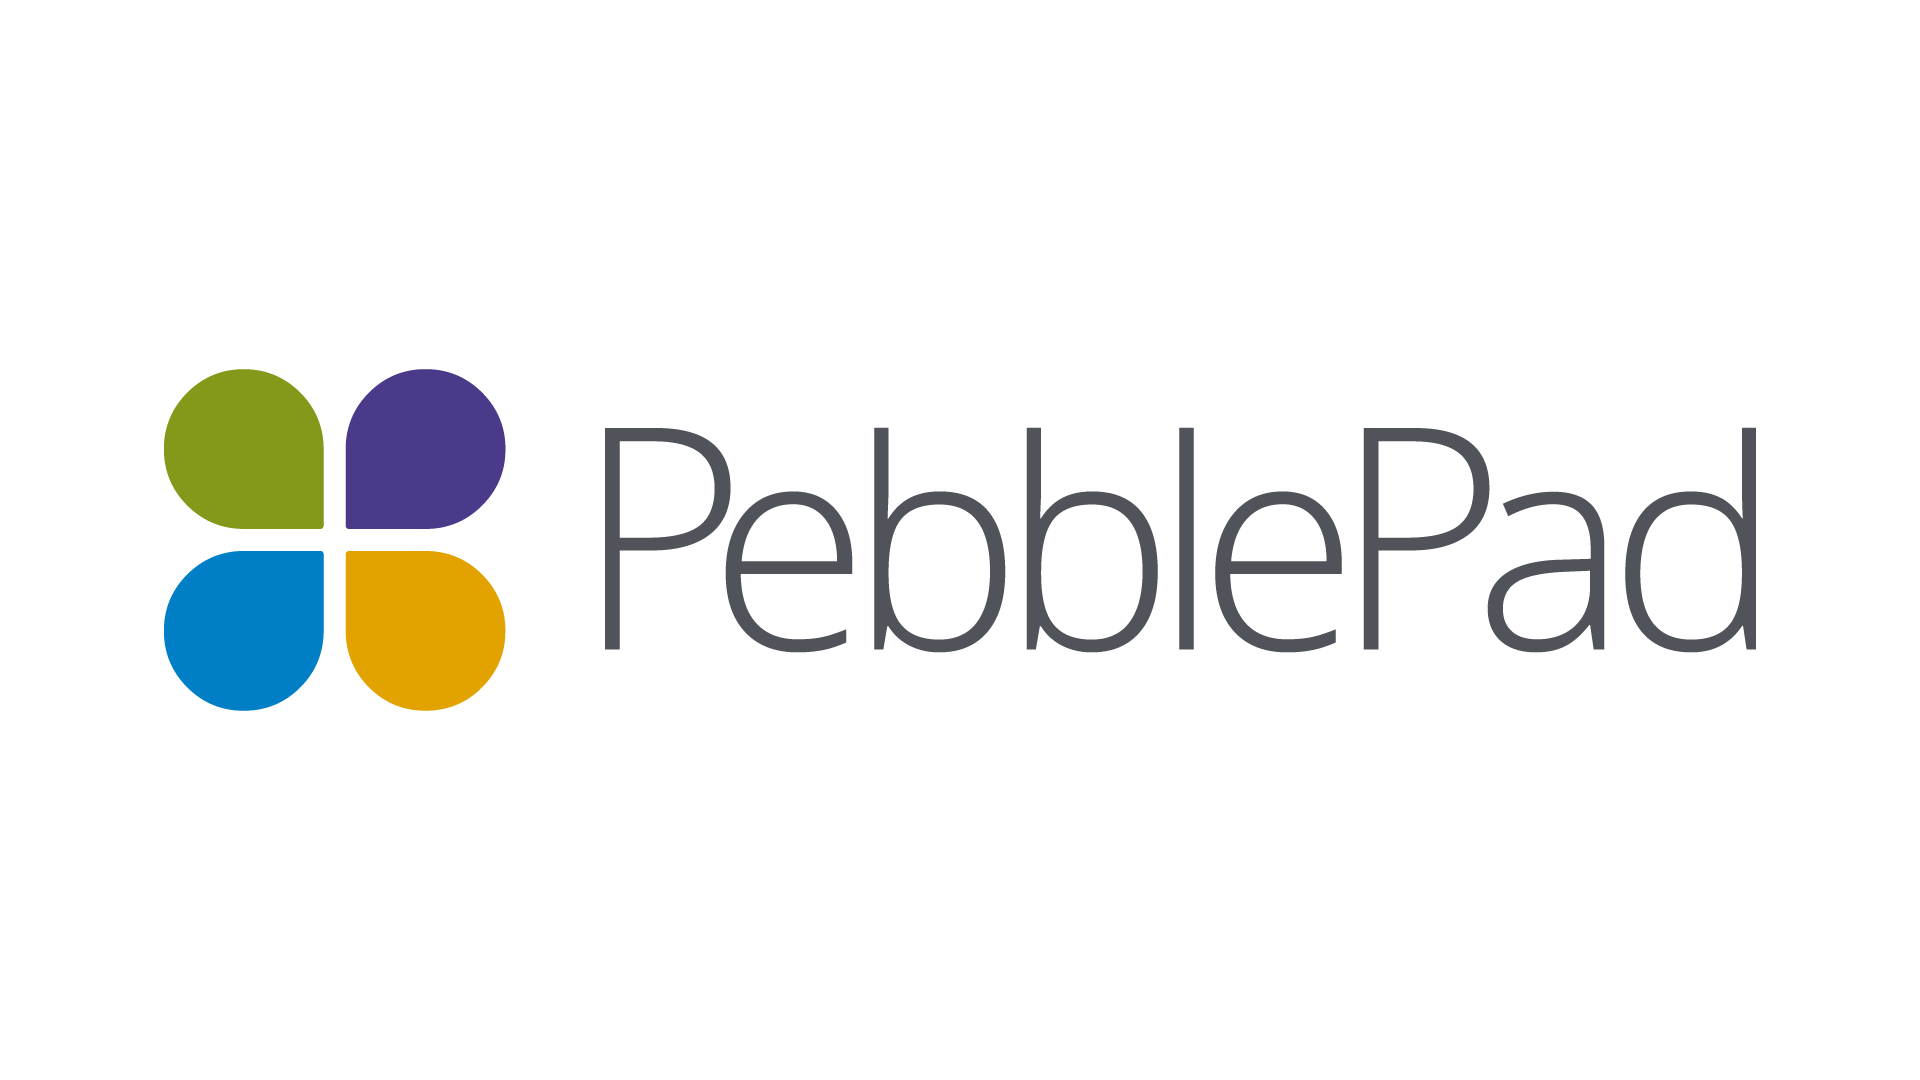 PebblePad